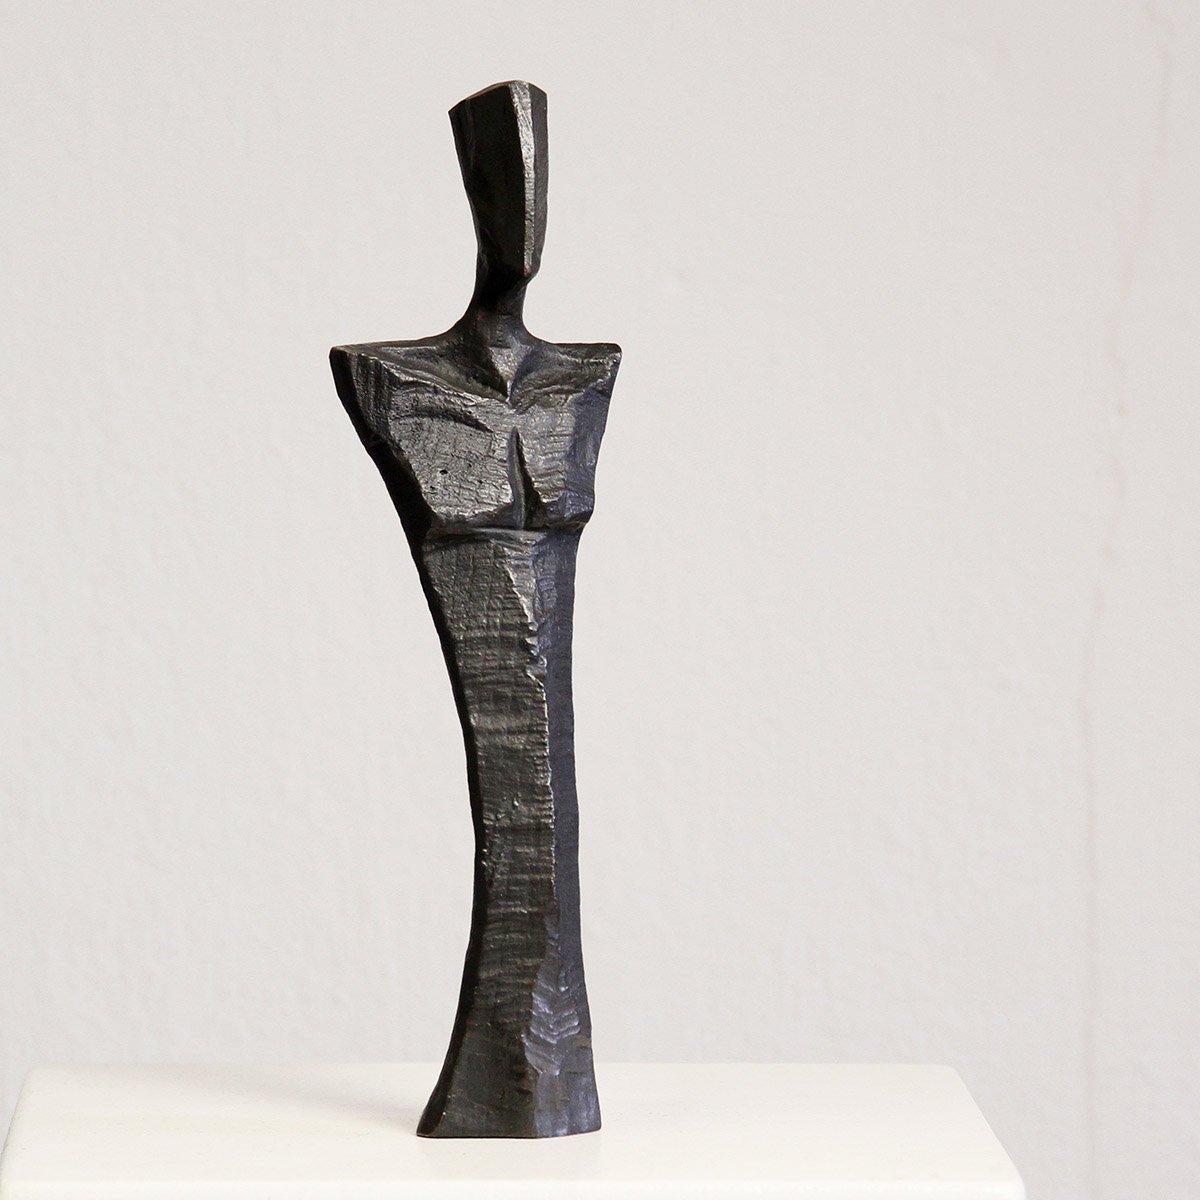 Amici Torso de Nando Kallweit. Sculpture en bronze, édition de 50 exemplaires